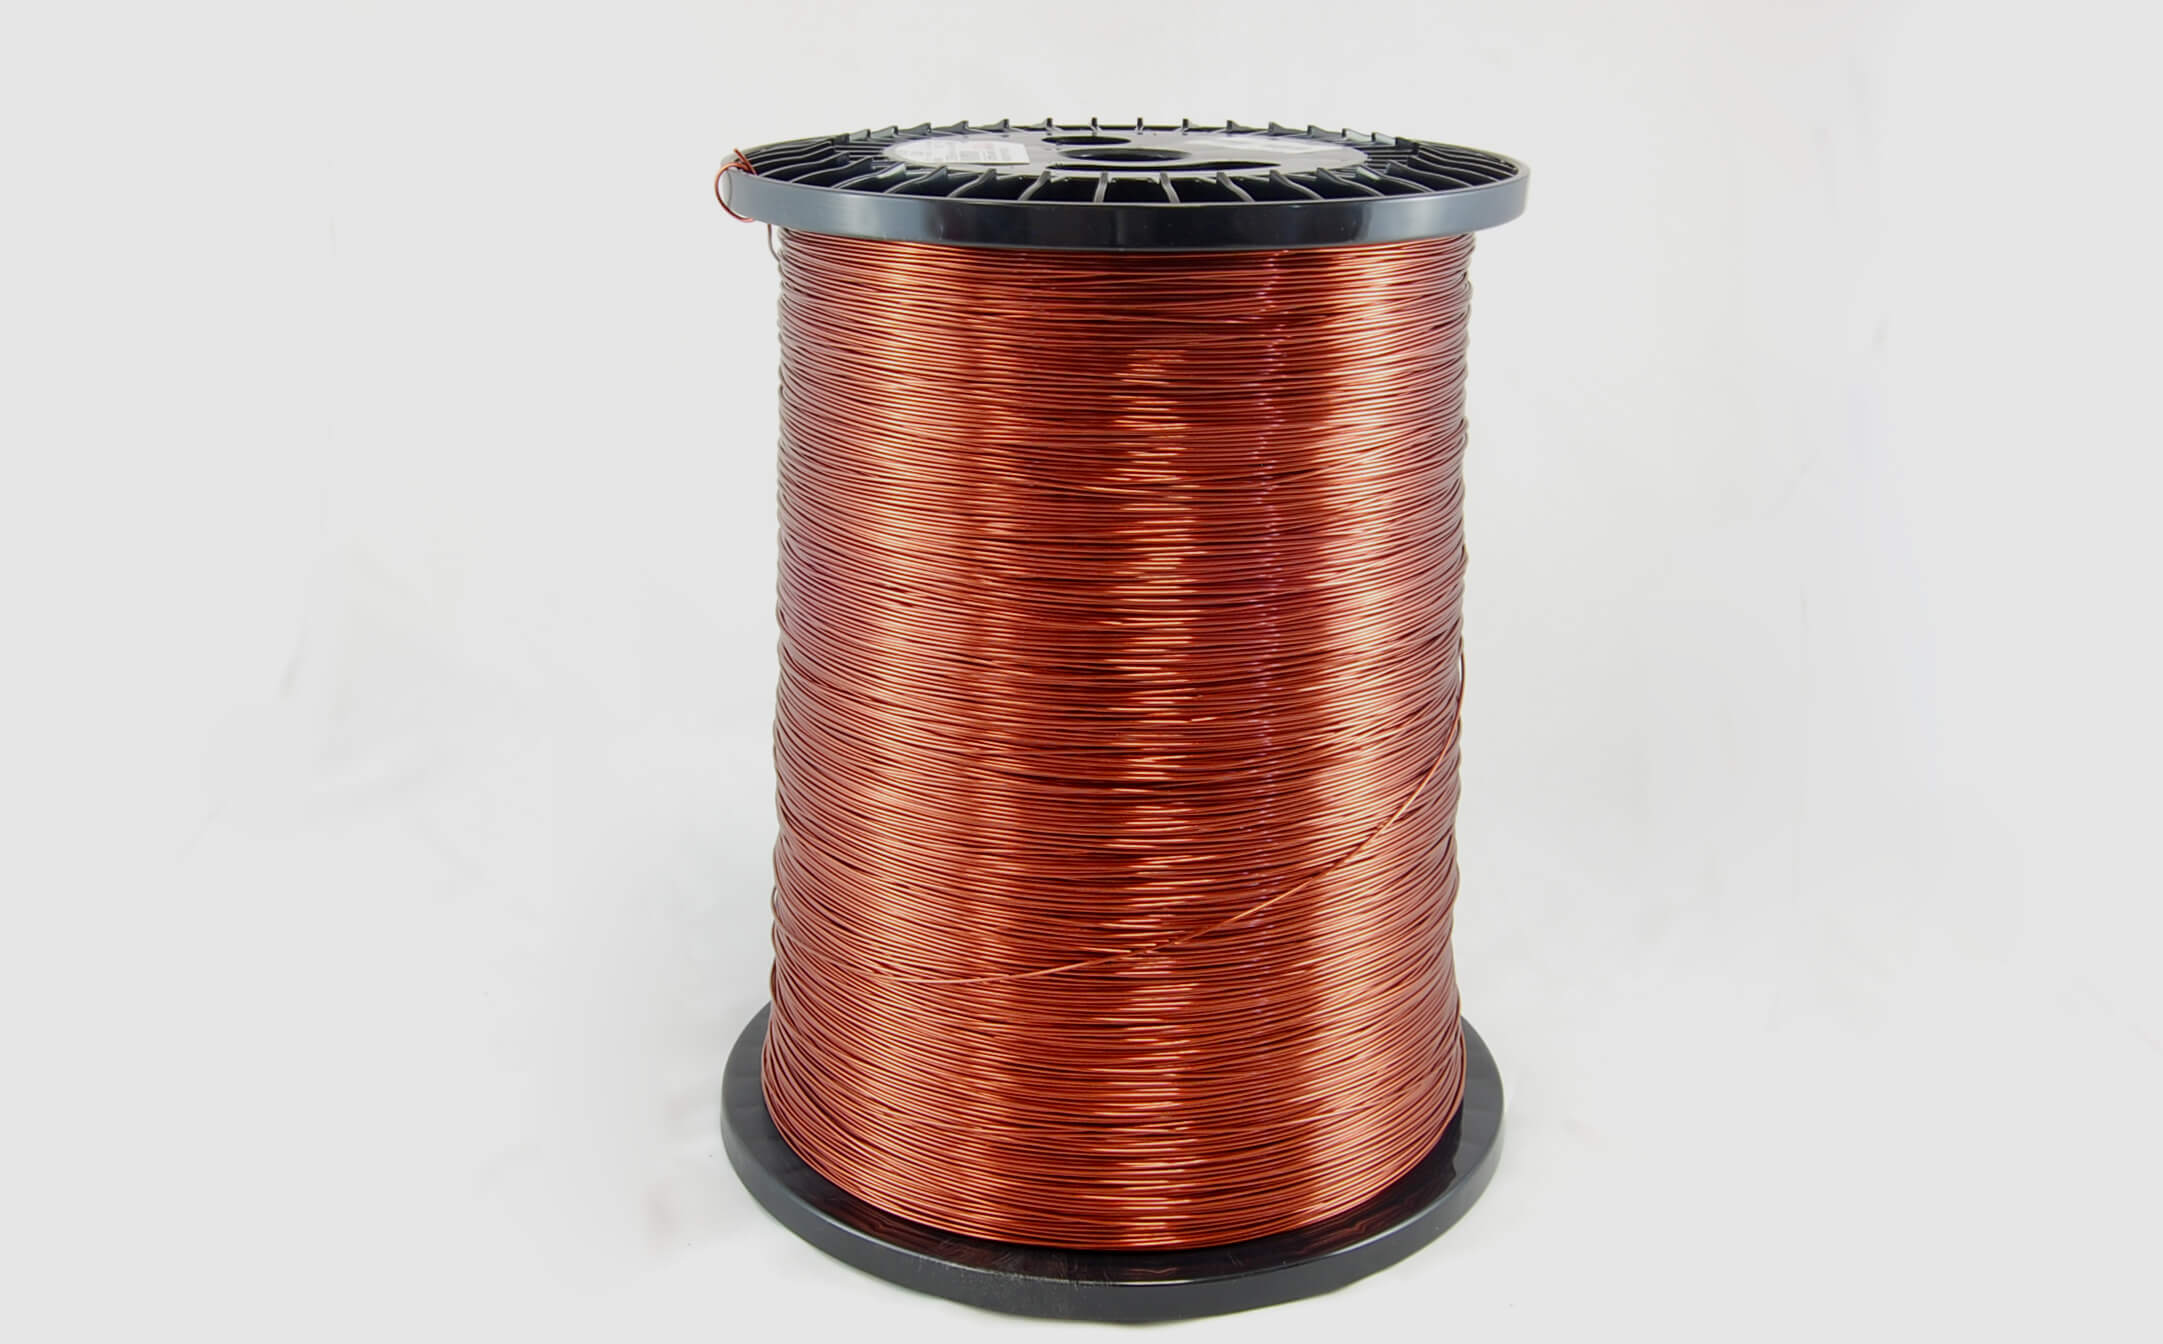 #10 Heavy Super Hyslik 200 Round HTAIH MW 35 Copper Magnet Wire 200°C, copper, 85 LB pail (average wght.)